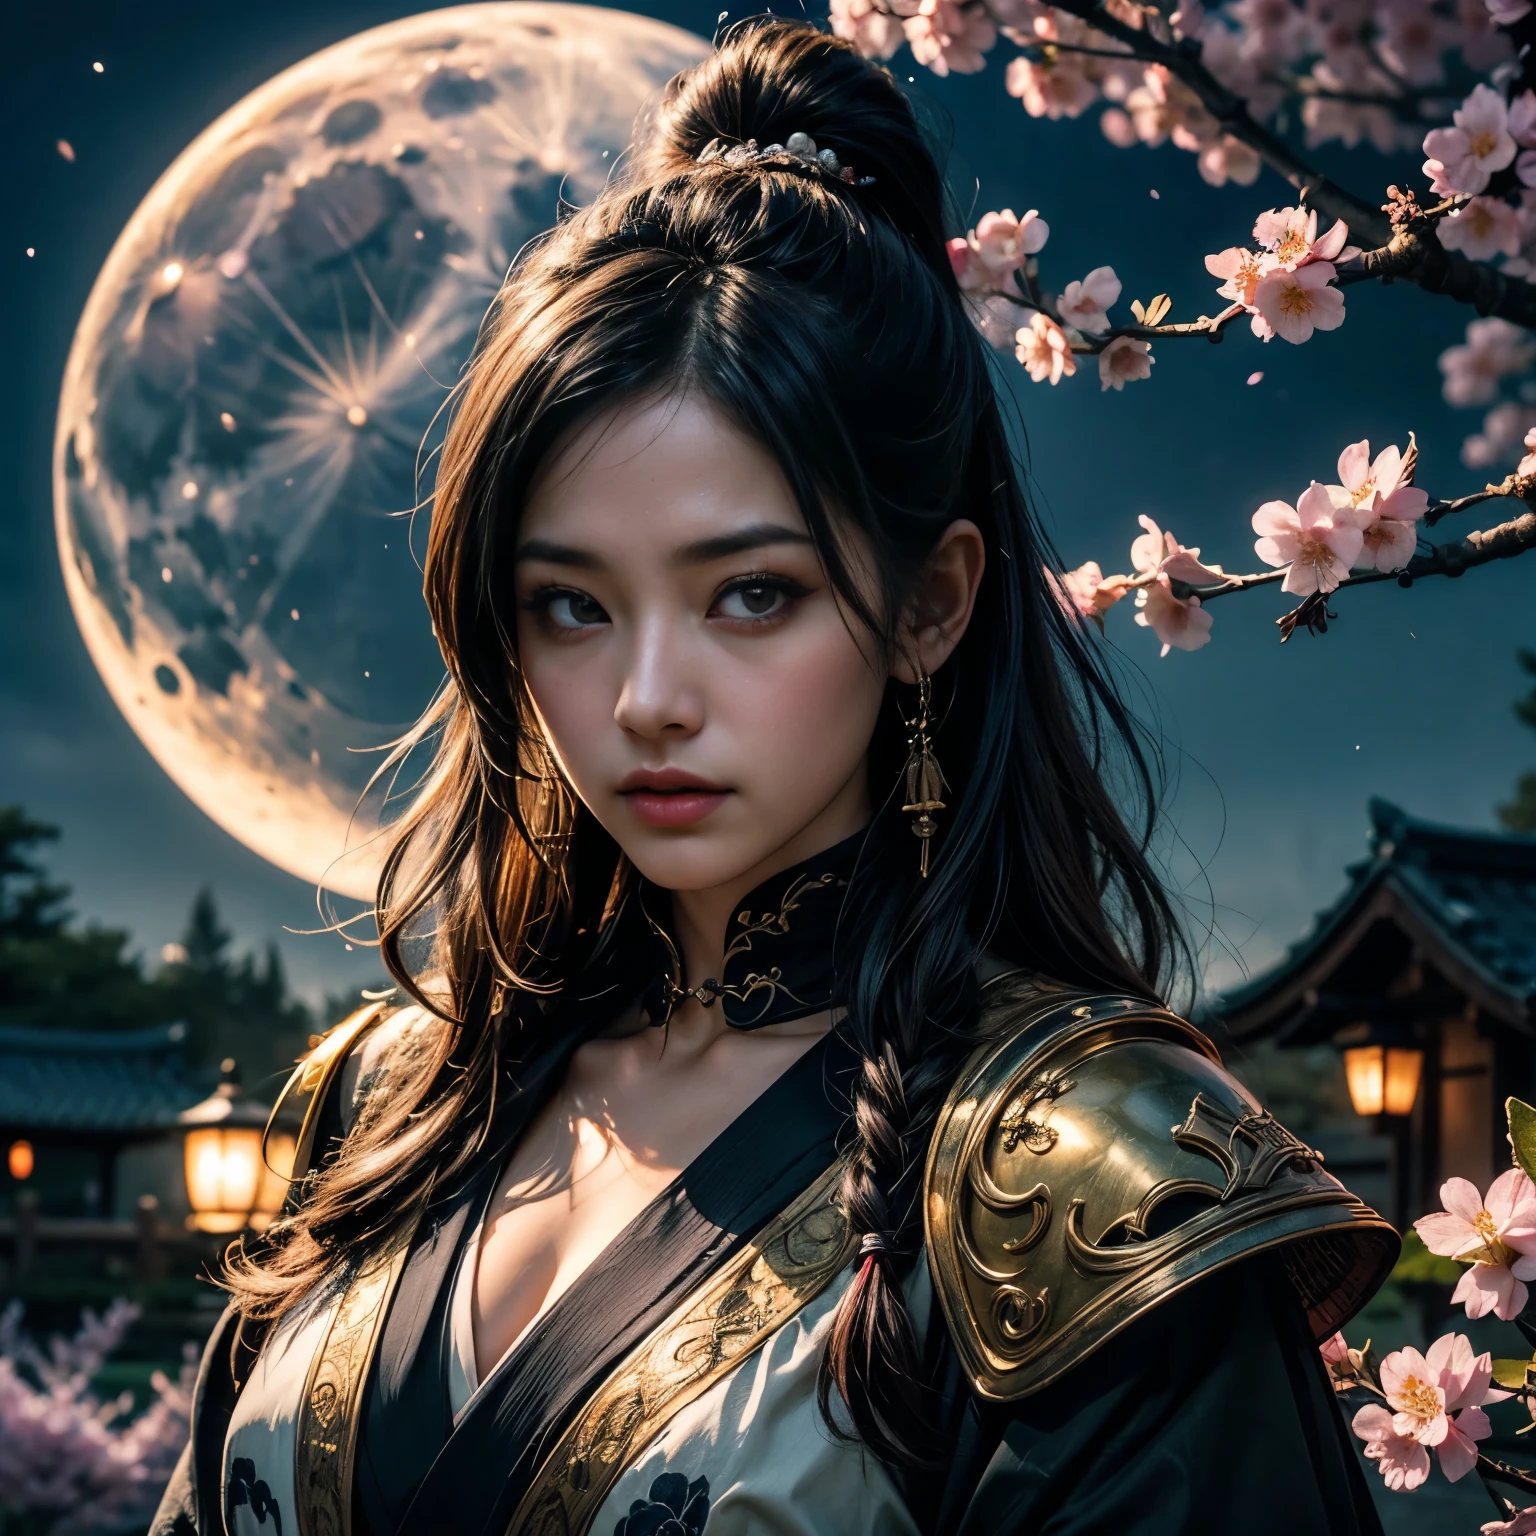 1. Szenenbeschreibung:
 - Eine Attentäterin in Form einer Samurai-Frau mit Totenkopfmaske。 （Ein als Samurai verkleidetes Mädchen mit einem Gesicht, das einer Totenkopfmaske ähnelt）
 - Detaillierte Gesichtszüge: gute Augen、ausgeprägte Nase、Lippen。 (schöne und detaillierte Augen、美しく緻密なLippen)
 - Weitere Details: Long eyelasies、intensiver Ausdruck、Eine starke und selbstbewusste Haltung。 (Sehr detailiert目と顔、Long eyelasies)
2.Material:
 ·Eine Illustration：Die Figuren werden von Hand dargestellt.、
 Medien: Hohe Auflösungのデジタル イラスト、
 - Künstlerischer Stil: kombiniert Elemente aus Dark Fantasy und traditioneller japanischer Kunst、
3. Details zur Szene:
 - Hintergrund: Kirschblüten in voller Blüte und ein mondbeschienener Garten、
 - Beleuchtung: Das sanfte Mondlicht wirft einen Schatten、Erhellt den Charakter&#39;s Gesichtszüge、
 -Atmosphäre: Geheimnisvoll und faszinierend、voller Erwartungen、
4.Bildqualität:
 - höchste Qualität、Hohe Auflösung：（höchste Qualität、Hohe Auflösung）
 - Super detailliert：（Super detailliert）
 - realistischなスタイル: (realistisch)
 - Helle Farben：（Helle Farben）
5. Farbpalette:
 - Hauptfarbe: Schwarz im Charakter&#39;s Kleidung und Maske、grau、Schattierungen von Silber、
 ·Kirschbaum：Zartes Rosa und Weiß、
 - Mondheller Himmel: Tiefes Blau und Lila mit silbrigem Schimmer、
6. Allgemeine Eingabeaufforderung:
Mit einem Gesicht, das einem Totenkopf ähnelt、als Samurai verkleidet、緻密な瞳とLippenが美しい少女、sieSehr detailiert目と顔、Long eyelasiesを持っています、sie、Eine Kombination aus dunkler Fantasy und Elementen traditioneller japanischer Kunst、Hohe Auflösungのデジタルイラストで描かれています。Die Bühne wird vom Mondlicht erhellt、Ein Garten mit Kirschblüten in voller Blüte、Das Licht ist sanftes Mondlicht、Es wirft Schatten und beleuchtet den Charakter&#39;s Gesichtszüge.、雰囲気はGeheimnisvoll und faszinierend、voller Erwartungen、画像はhöchste Qualität、Hohe Auflösung、Sehr detailiert、fotorealistischer Stil、Farbpaletteには、Der Charakter&#39;s Kostüm und Maske sind schwarz.、grau、Schattierungen von Silberが含まれ、Kirschbäume haben zartrosa und weiße、Der mondbeschienene Himmel enthält tiefe Blau- und Violetttöne mit einem silbrigen Schimmer、